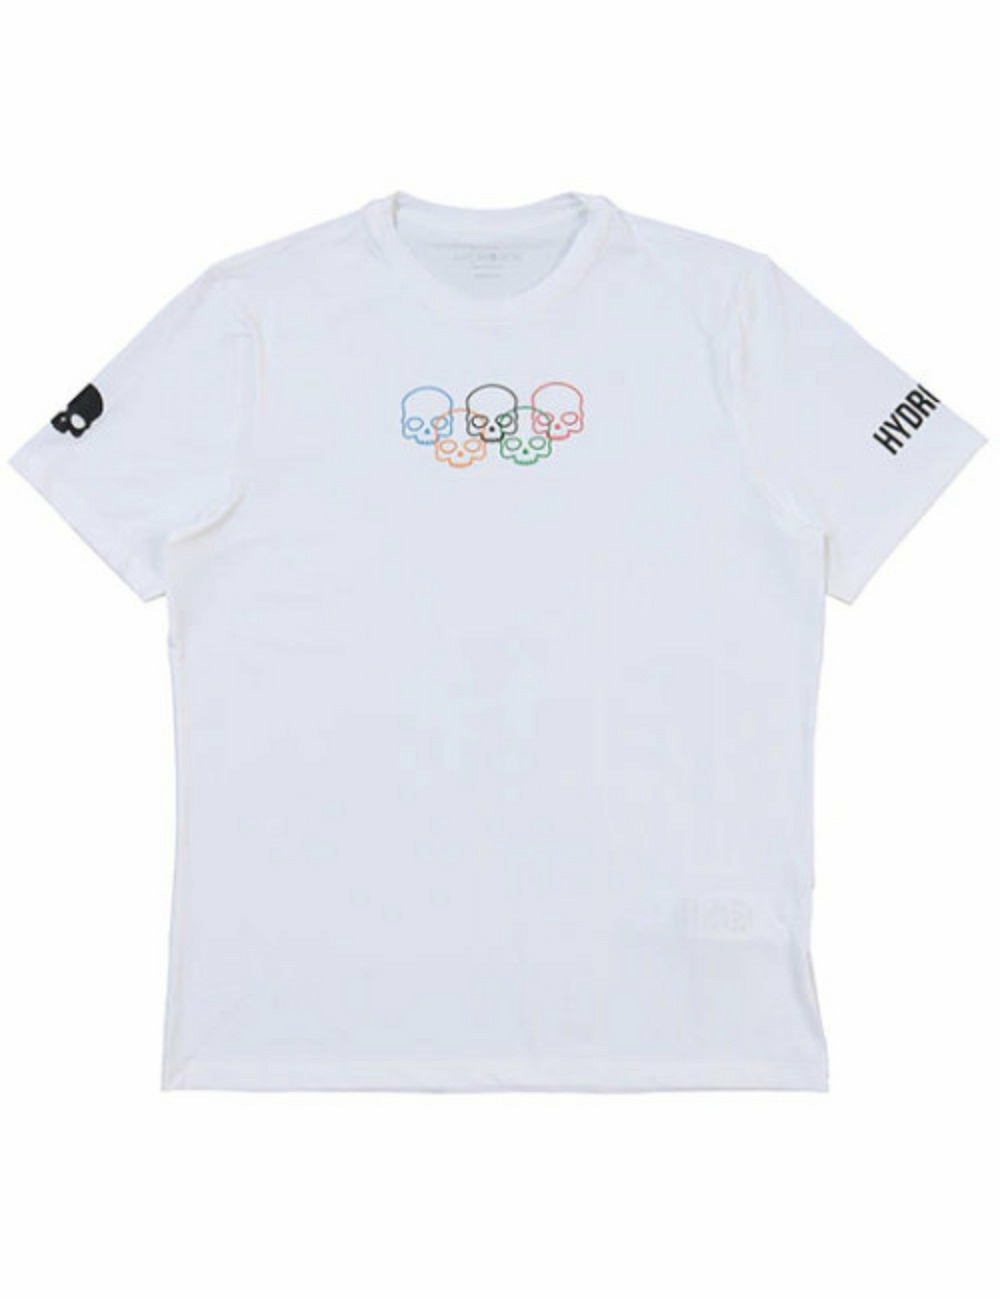 オリンピックスカルテックTシャツ / OLYMPIC SKULLS TECH TEE 詳細画像 ホワイト 1